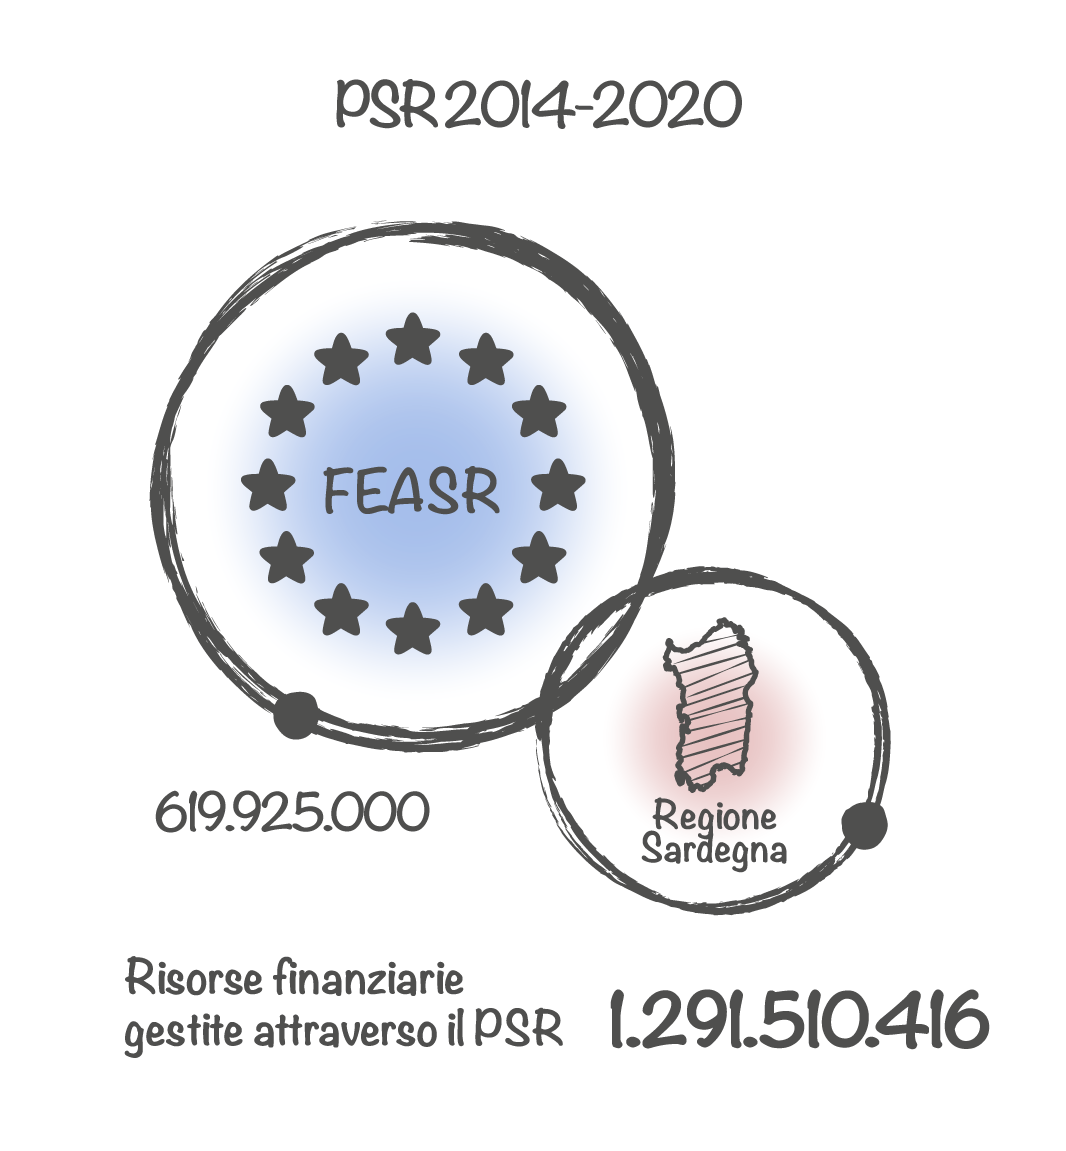 PSR 2014-2022 - Risorse finanziare gestite attraverso il PSR € 1291510416